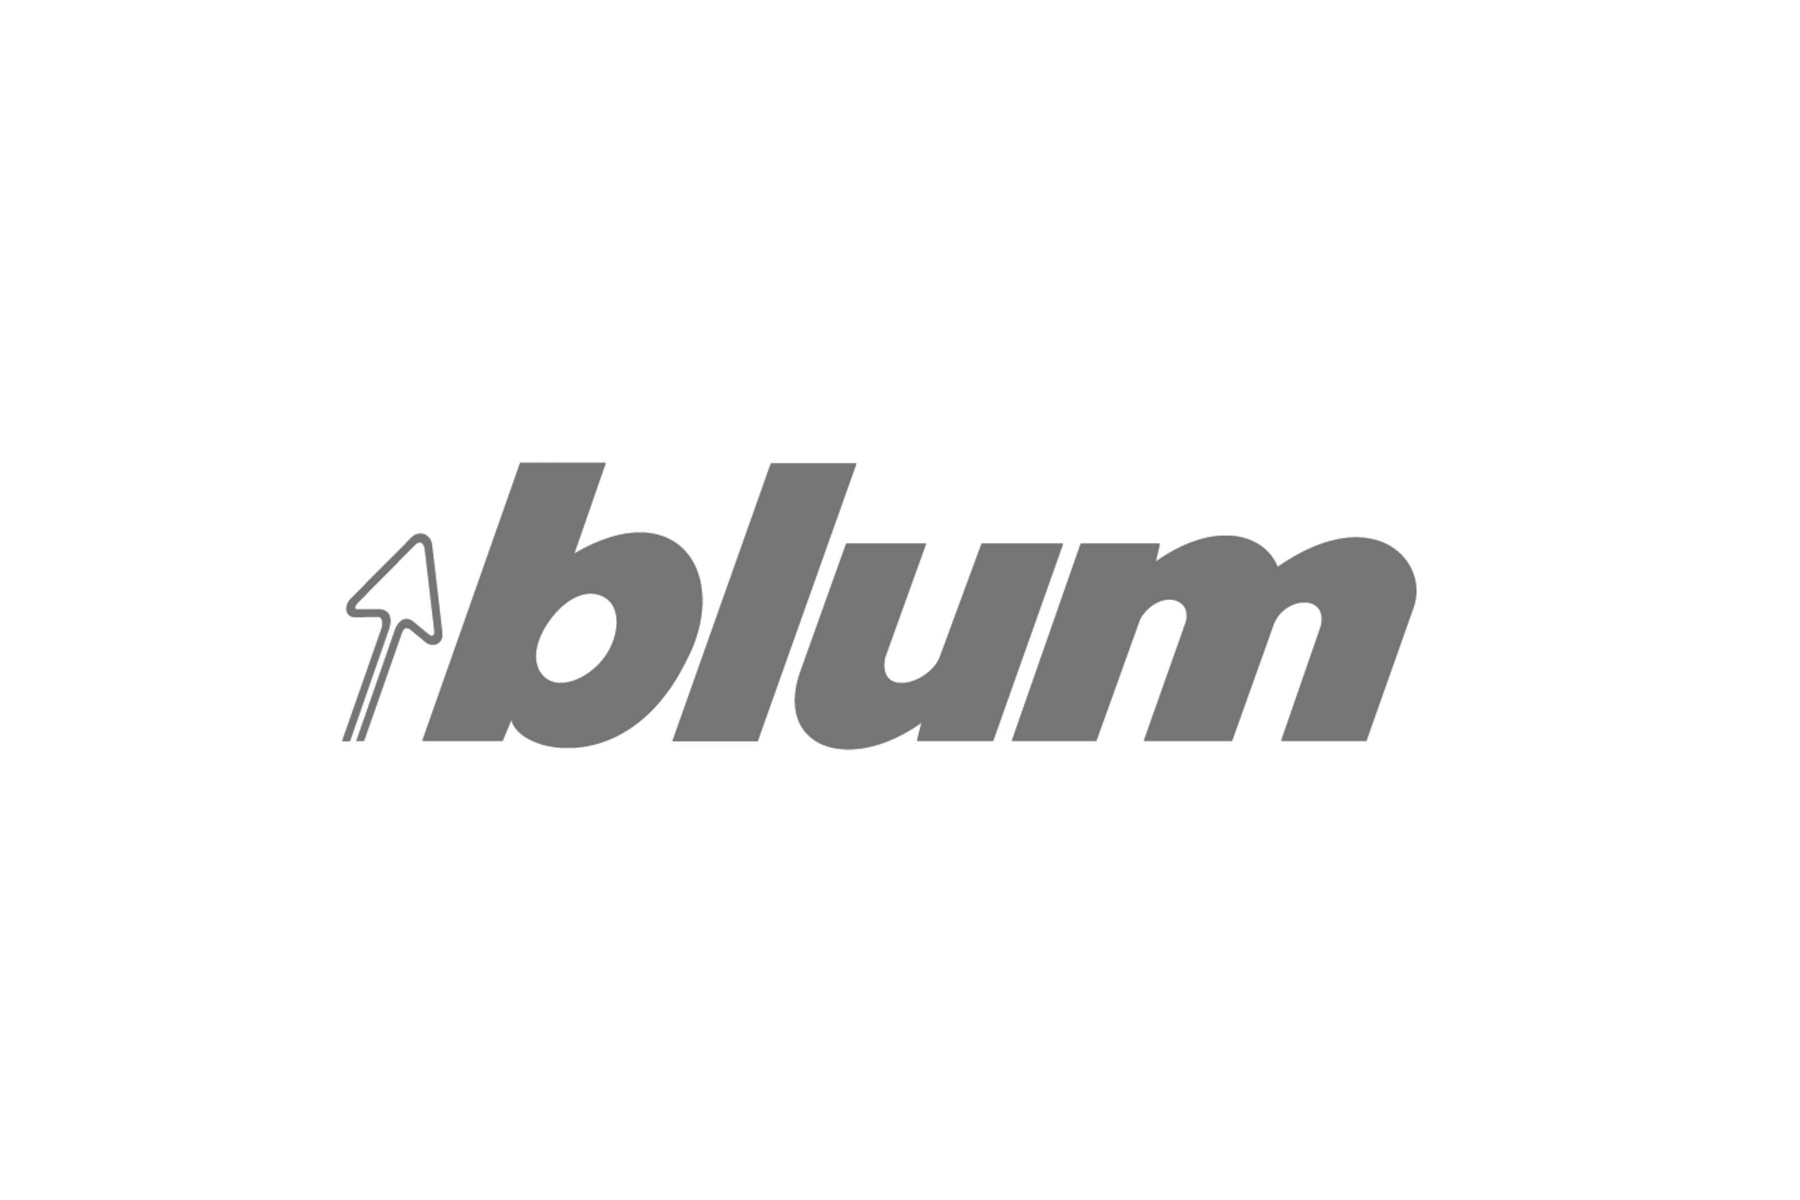 Blum GS.jpg